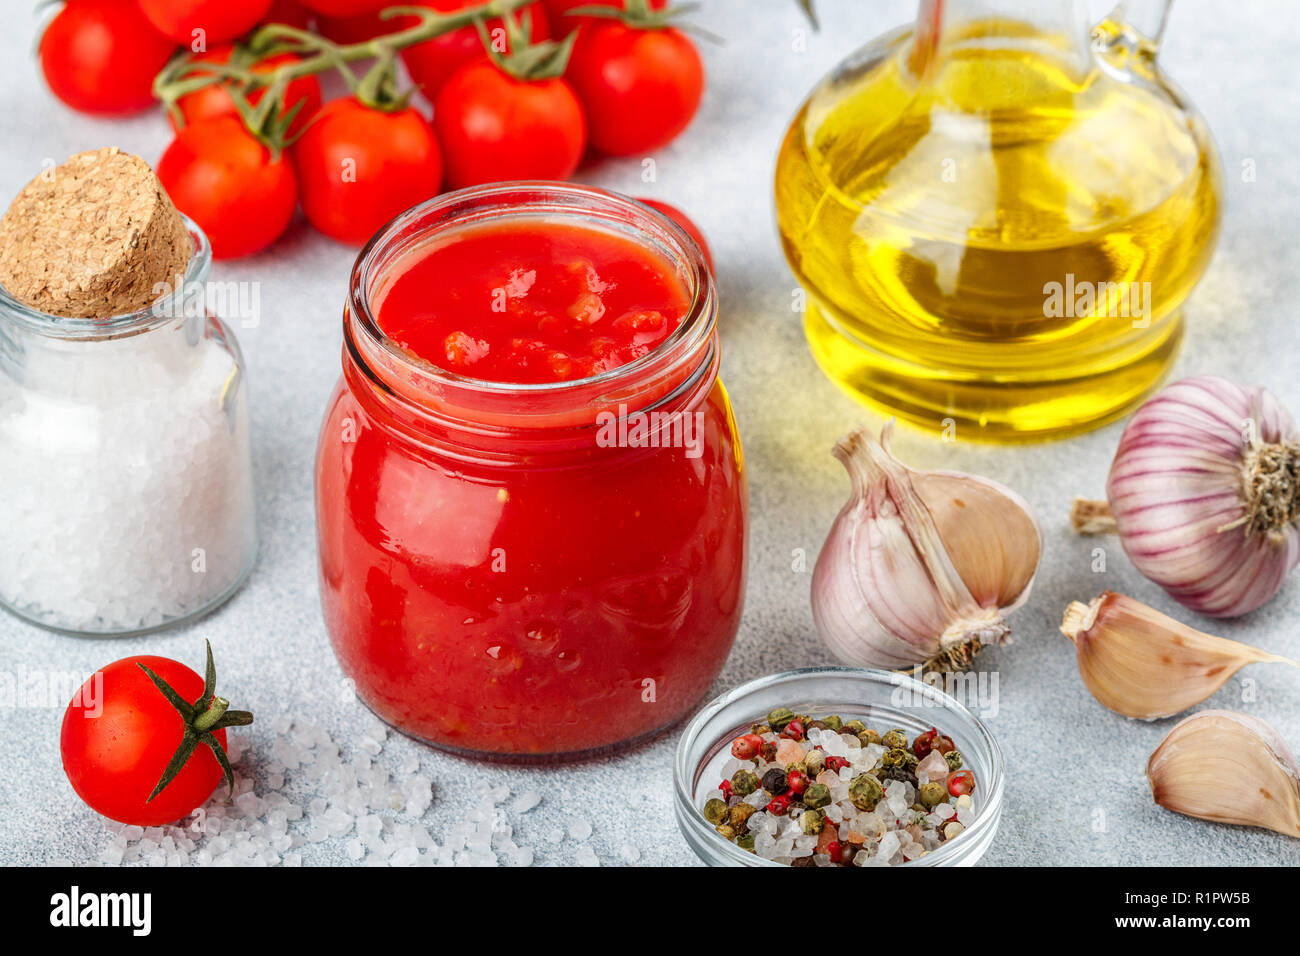 Tradizionale salsa di pomodoro in un vasetto di vetro con aglio e spezie. Ingredienti e olio d'oliva sulla superficie della luce. Messa a fuoco selettiva Foto Stock